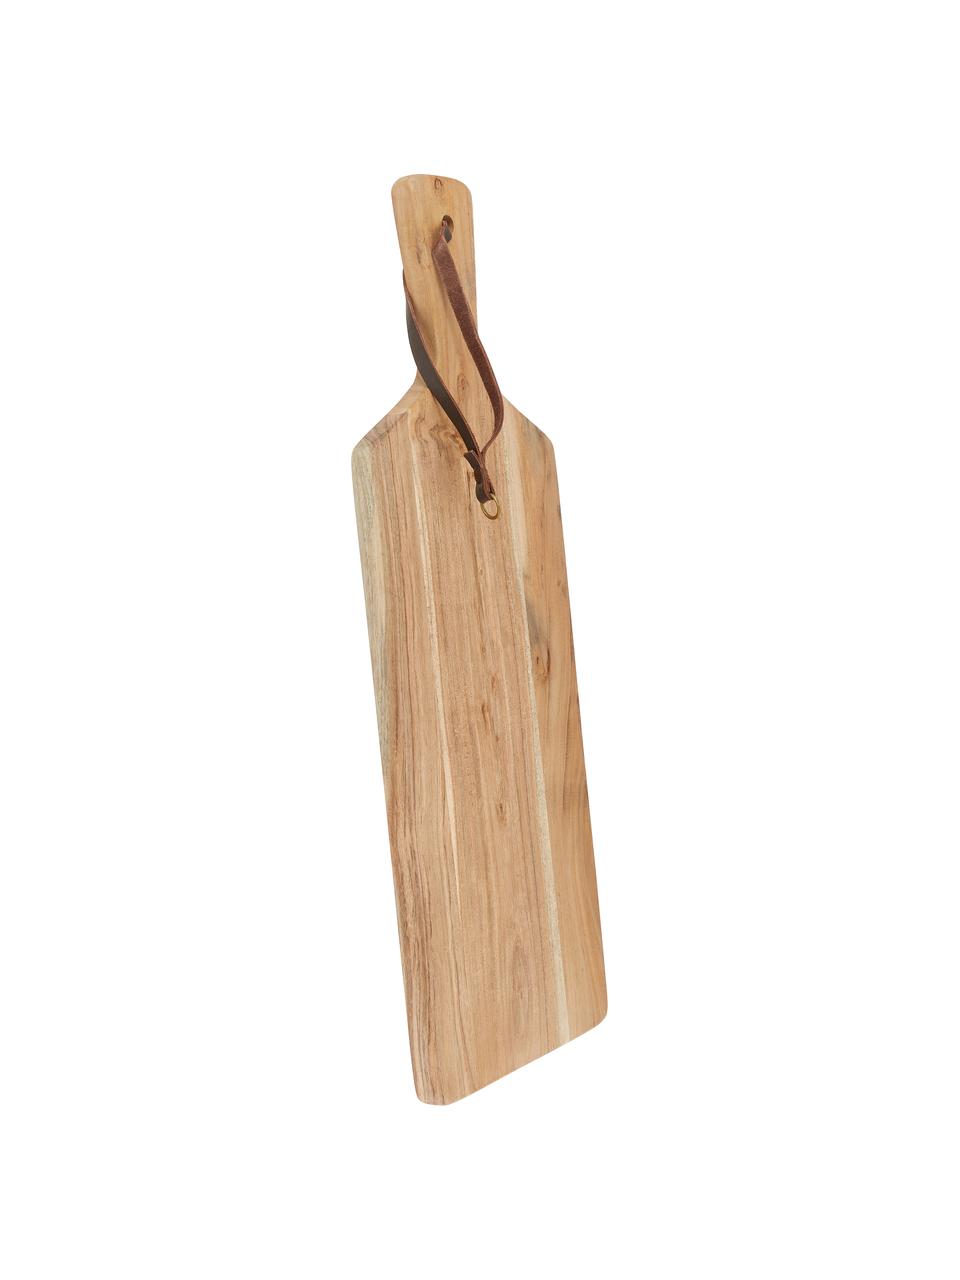 Prkénko z akátového dřeva s koženým řemínkem Acacia, různé velikosti, Akátové dřevo